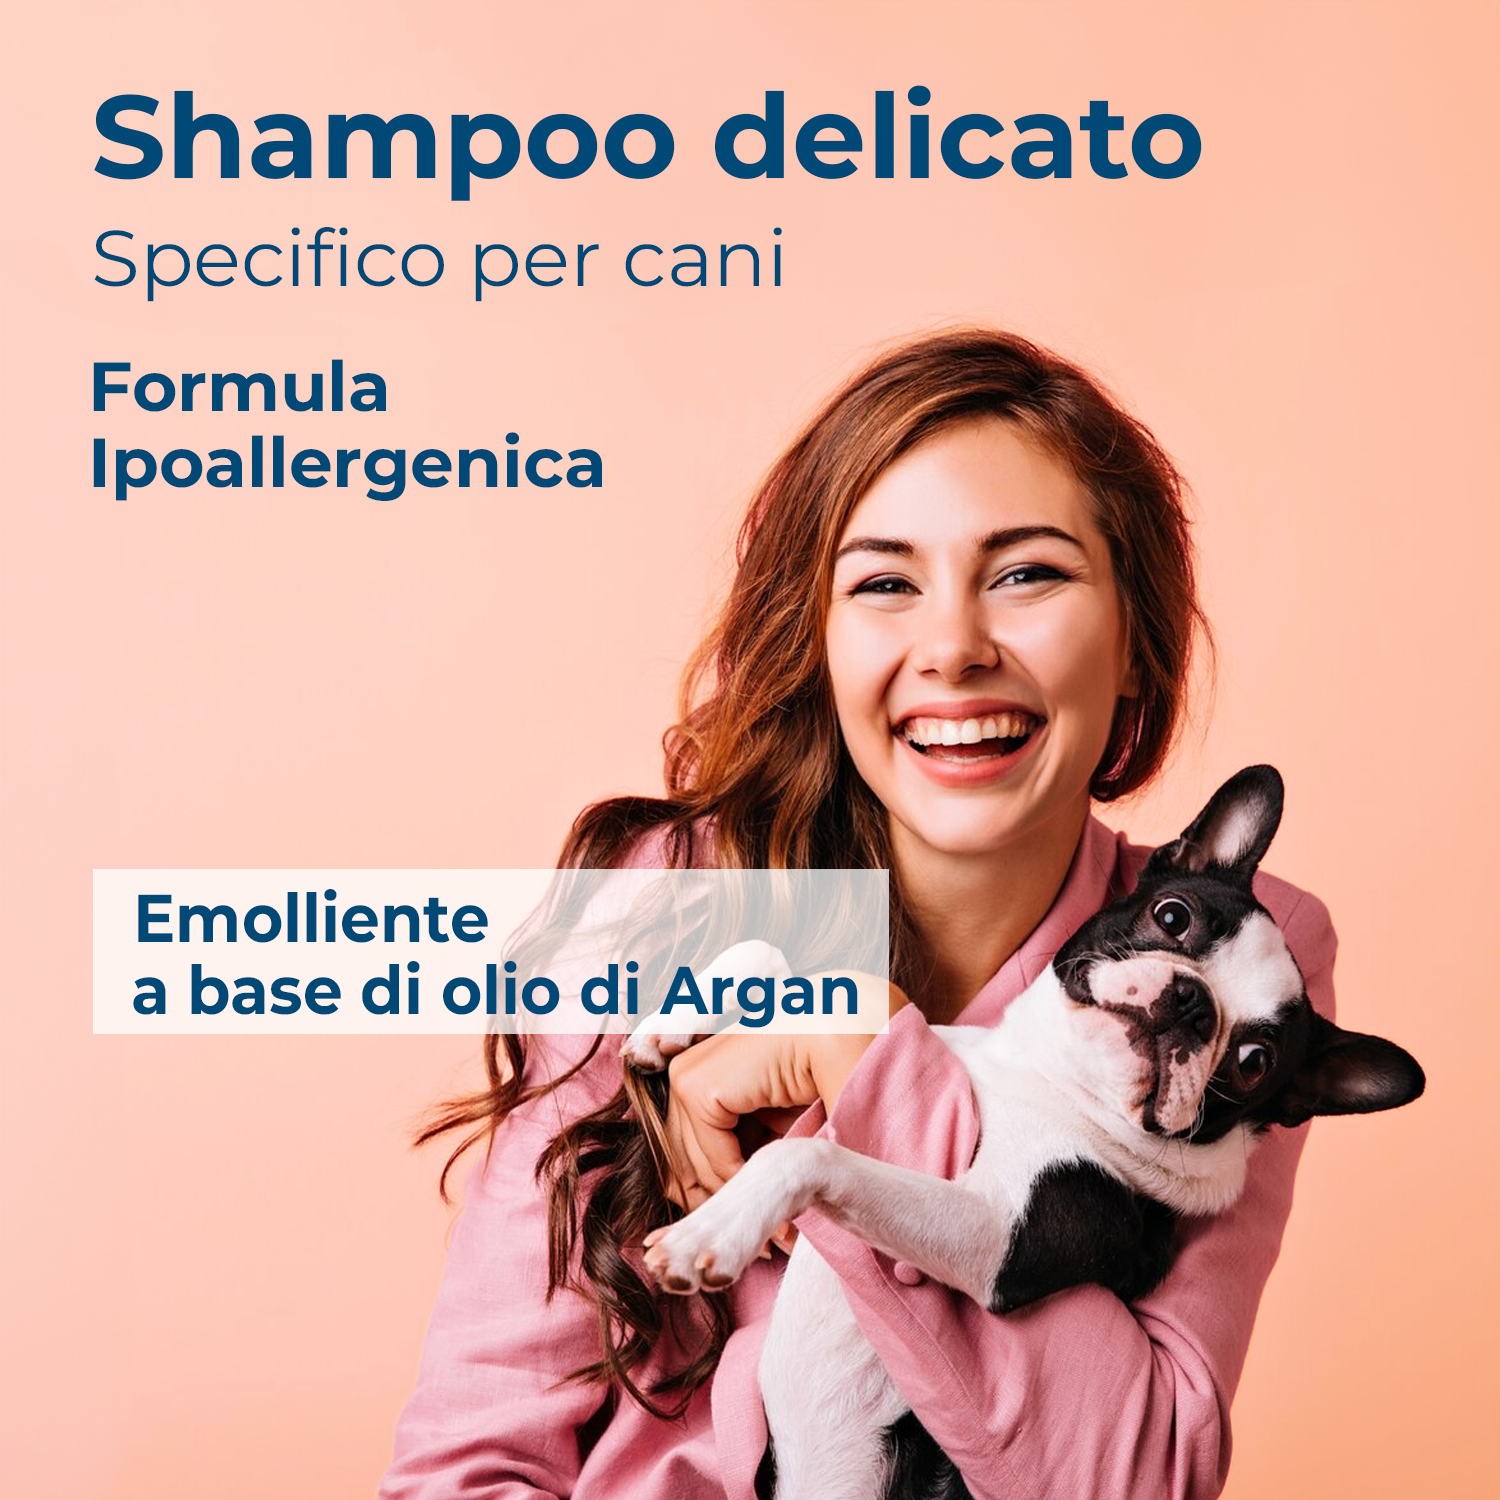 Shampoo delicato, formula ipoallergenica